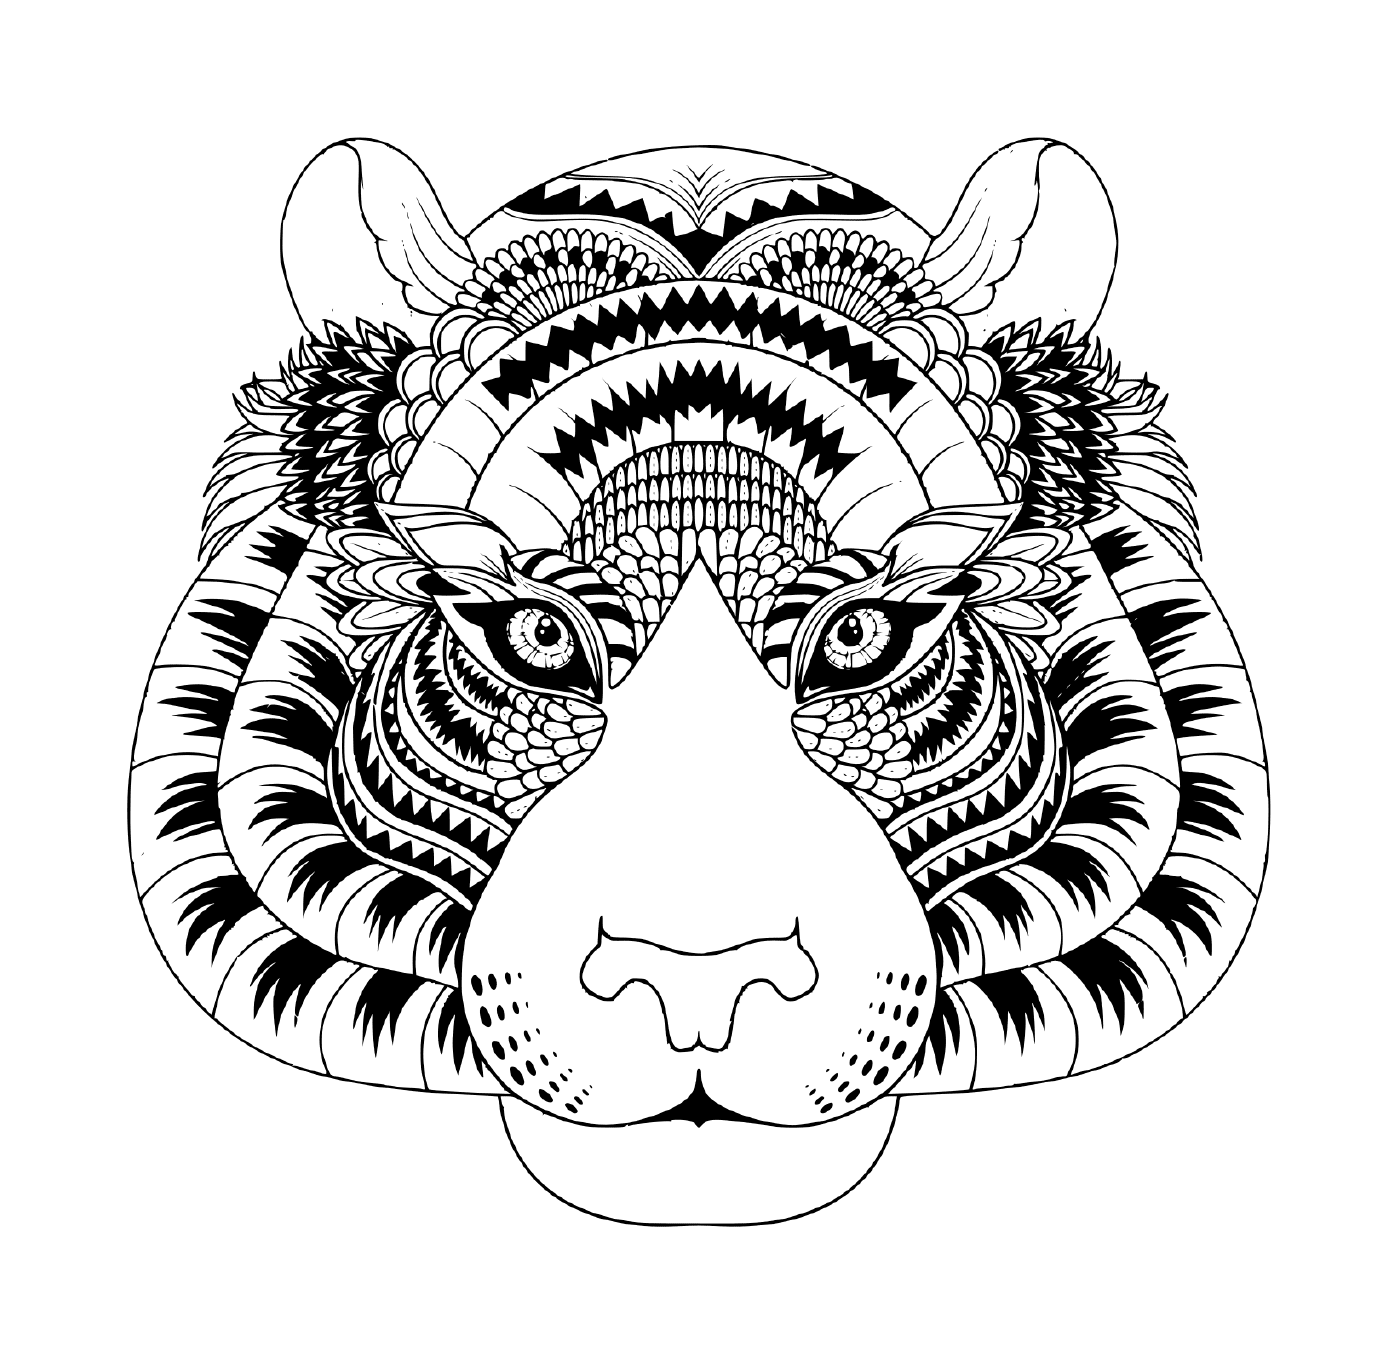  Голова тигра со зентанглевыми деталями 